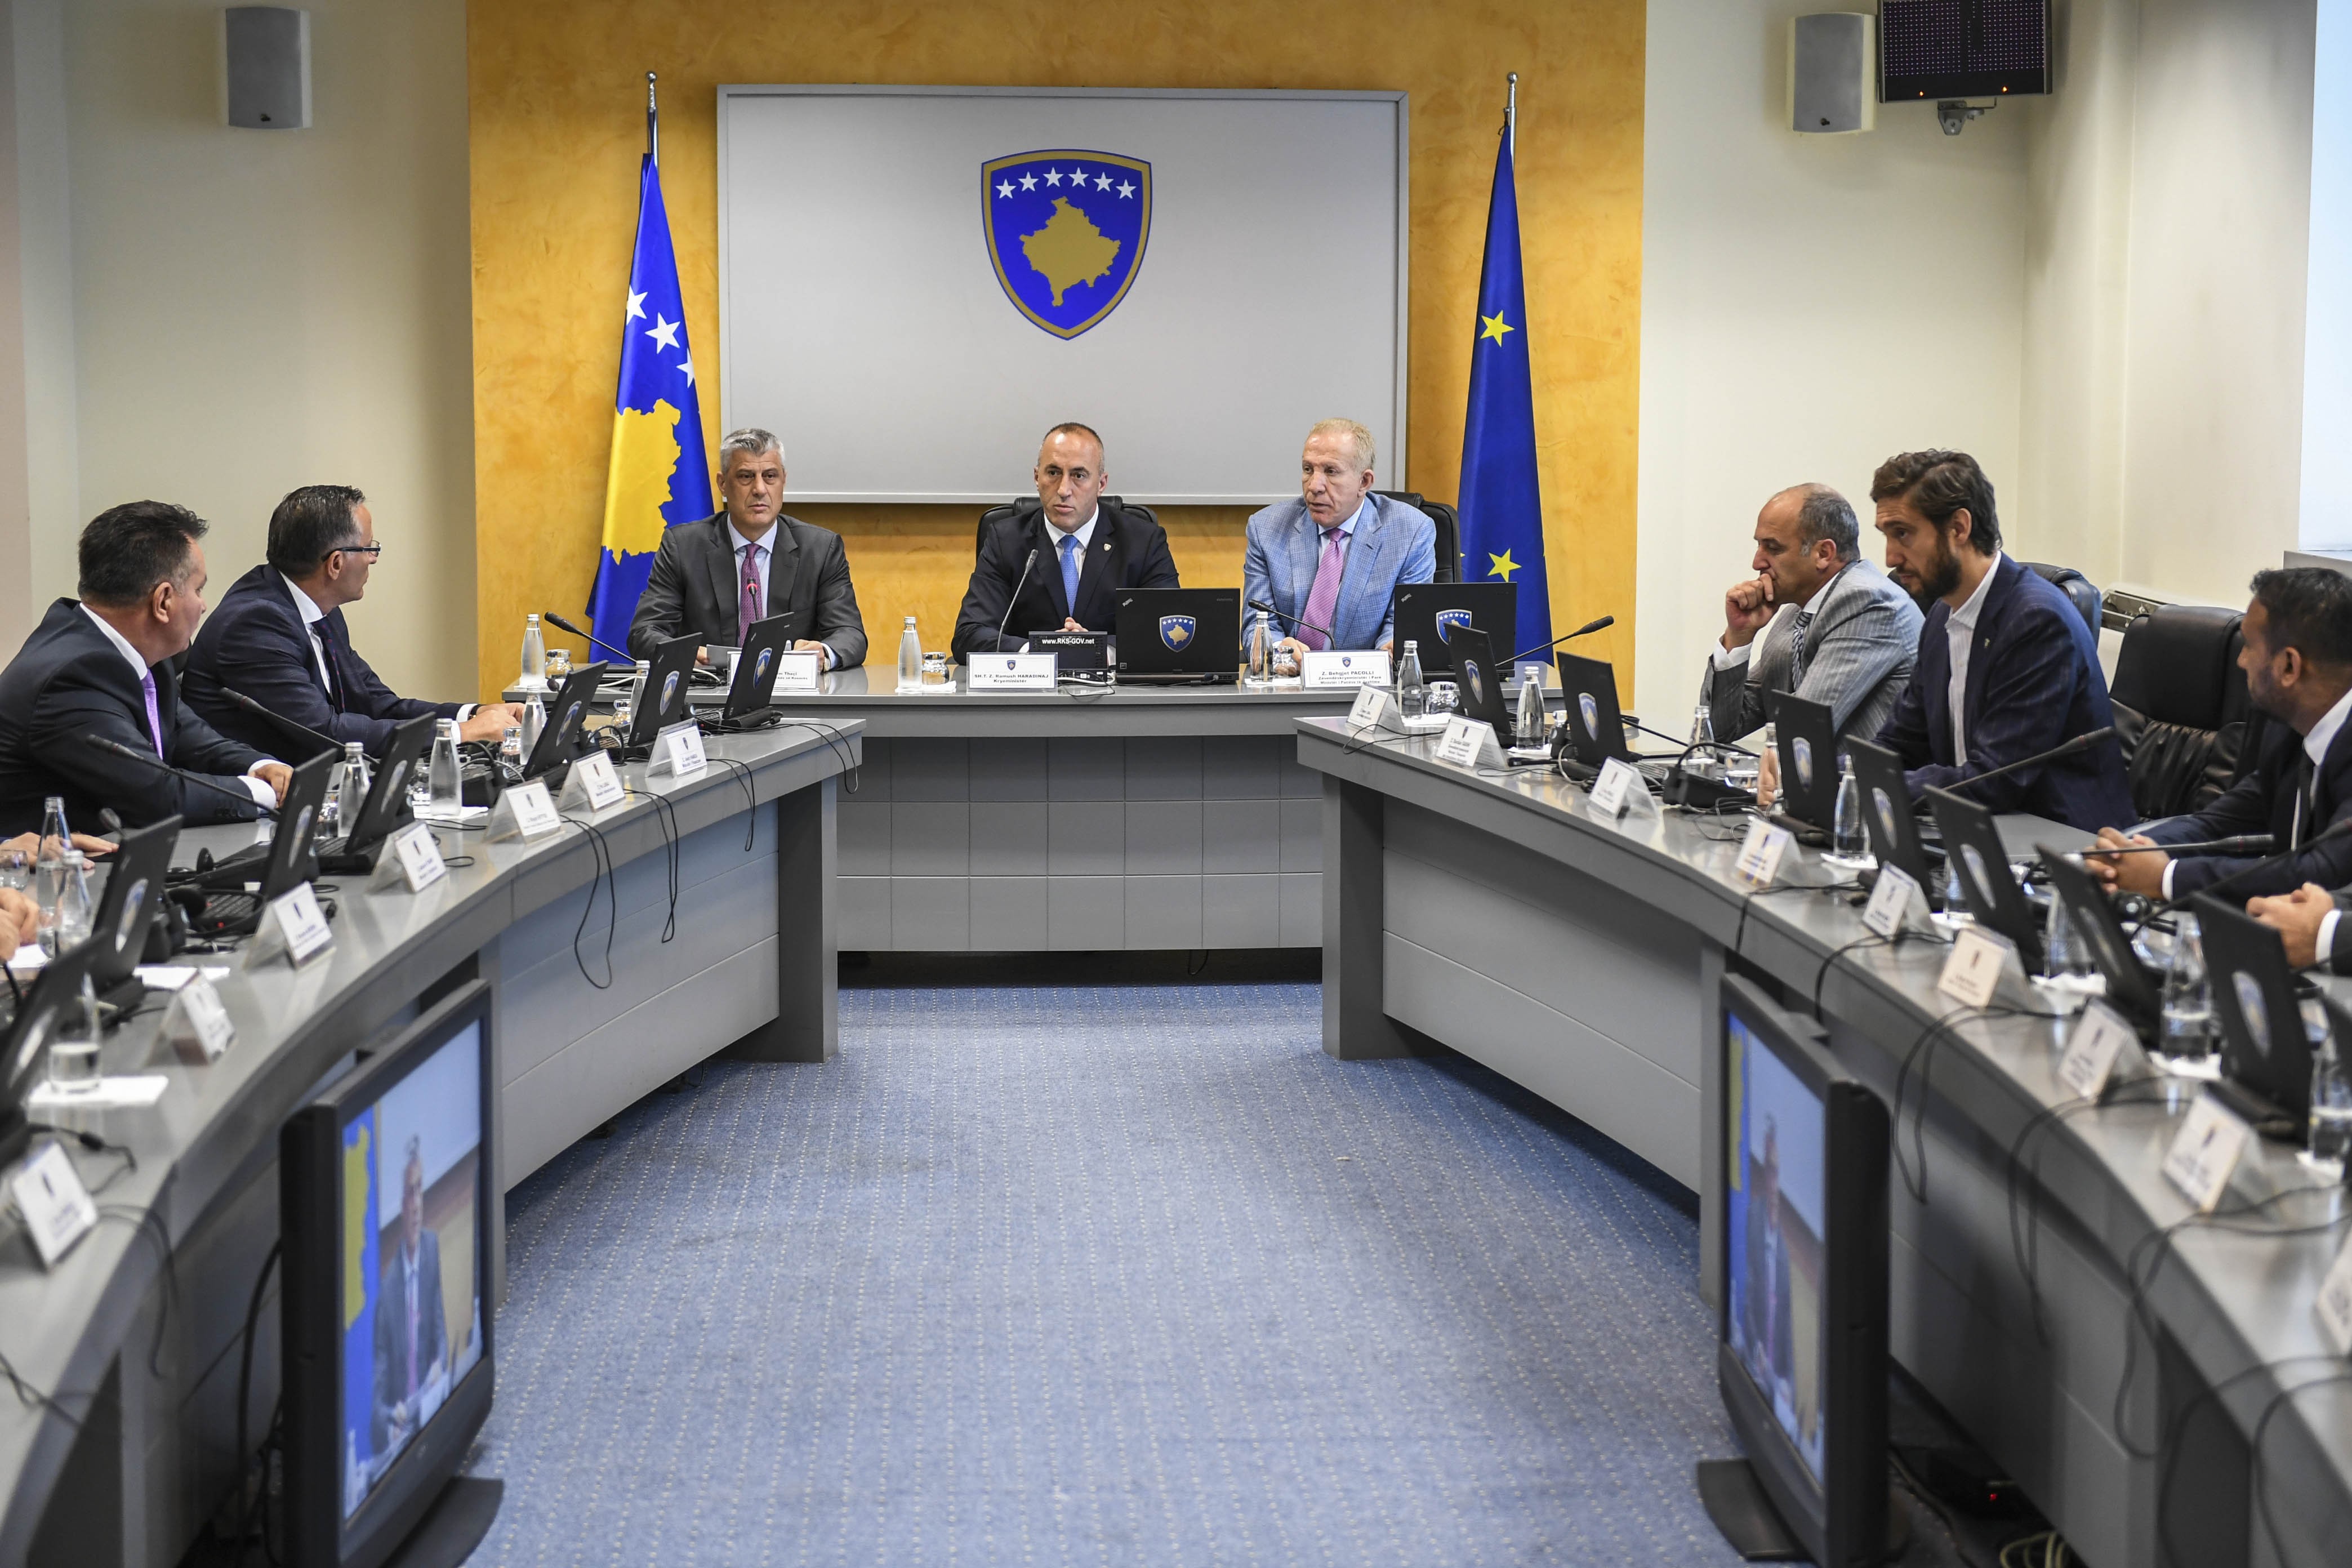 Presidenti Thaçi informon kabinetin qeveritar për takimin në Bruksel